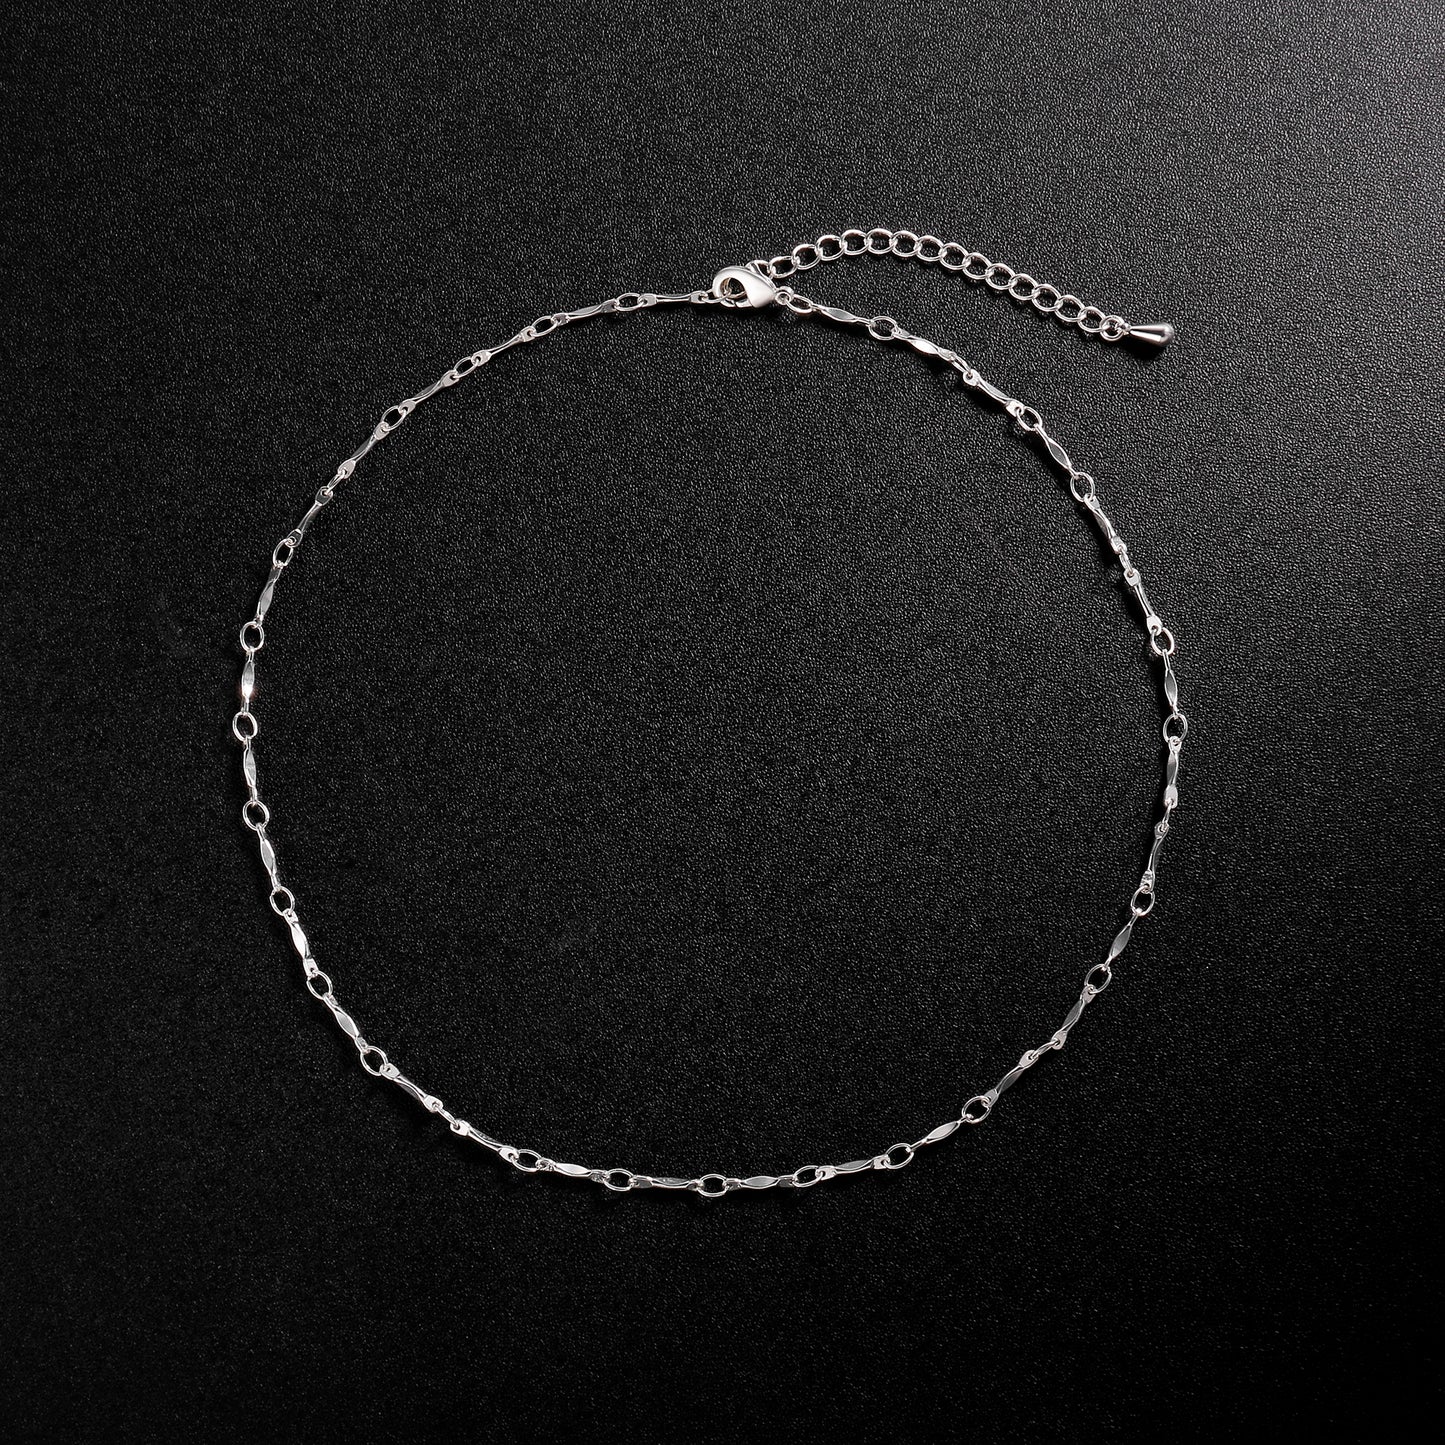 TASISO Silver Dainty Bone Chain Choker Necklace Bar Link Chain